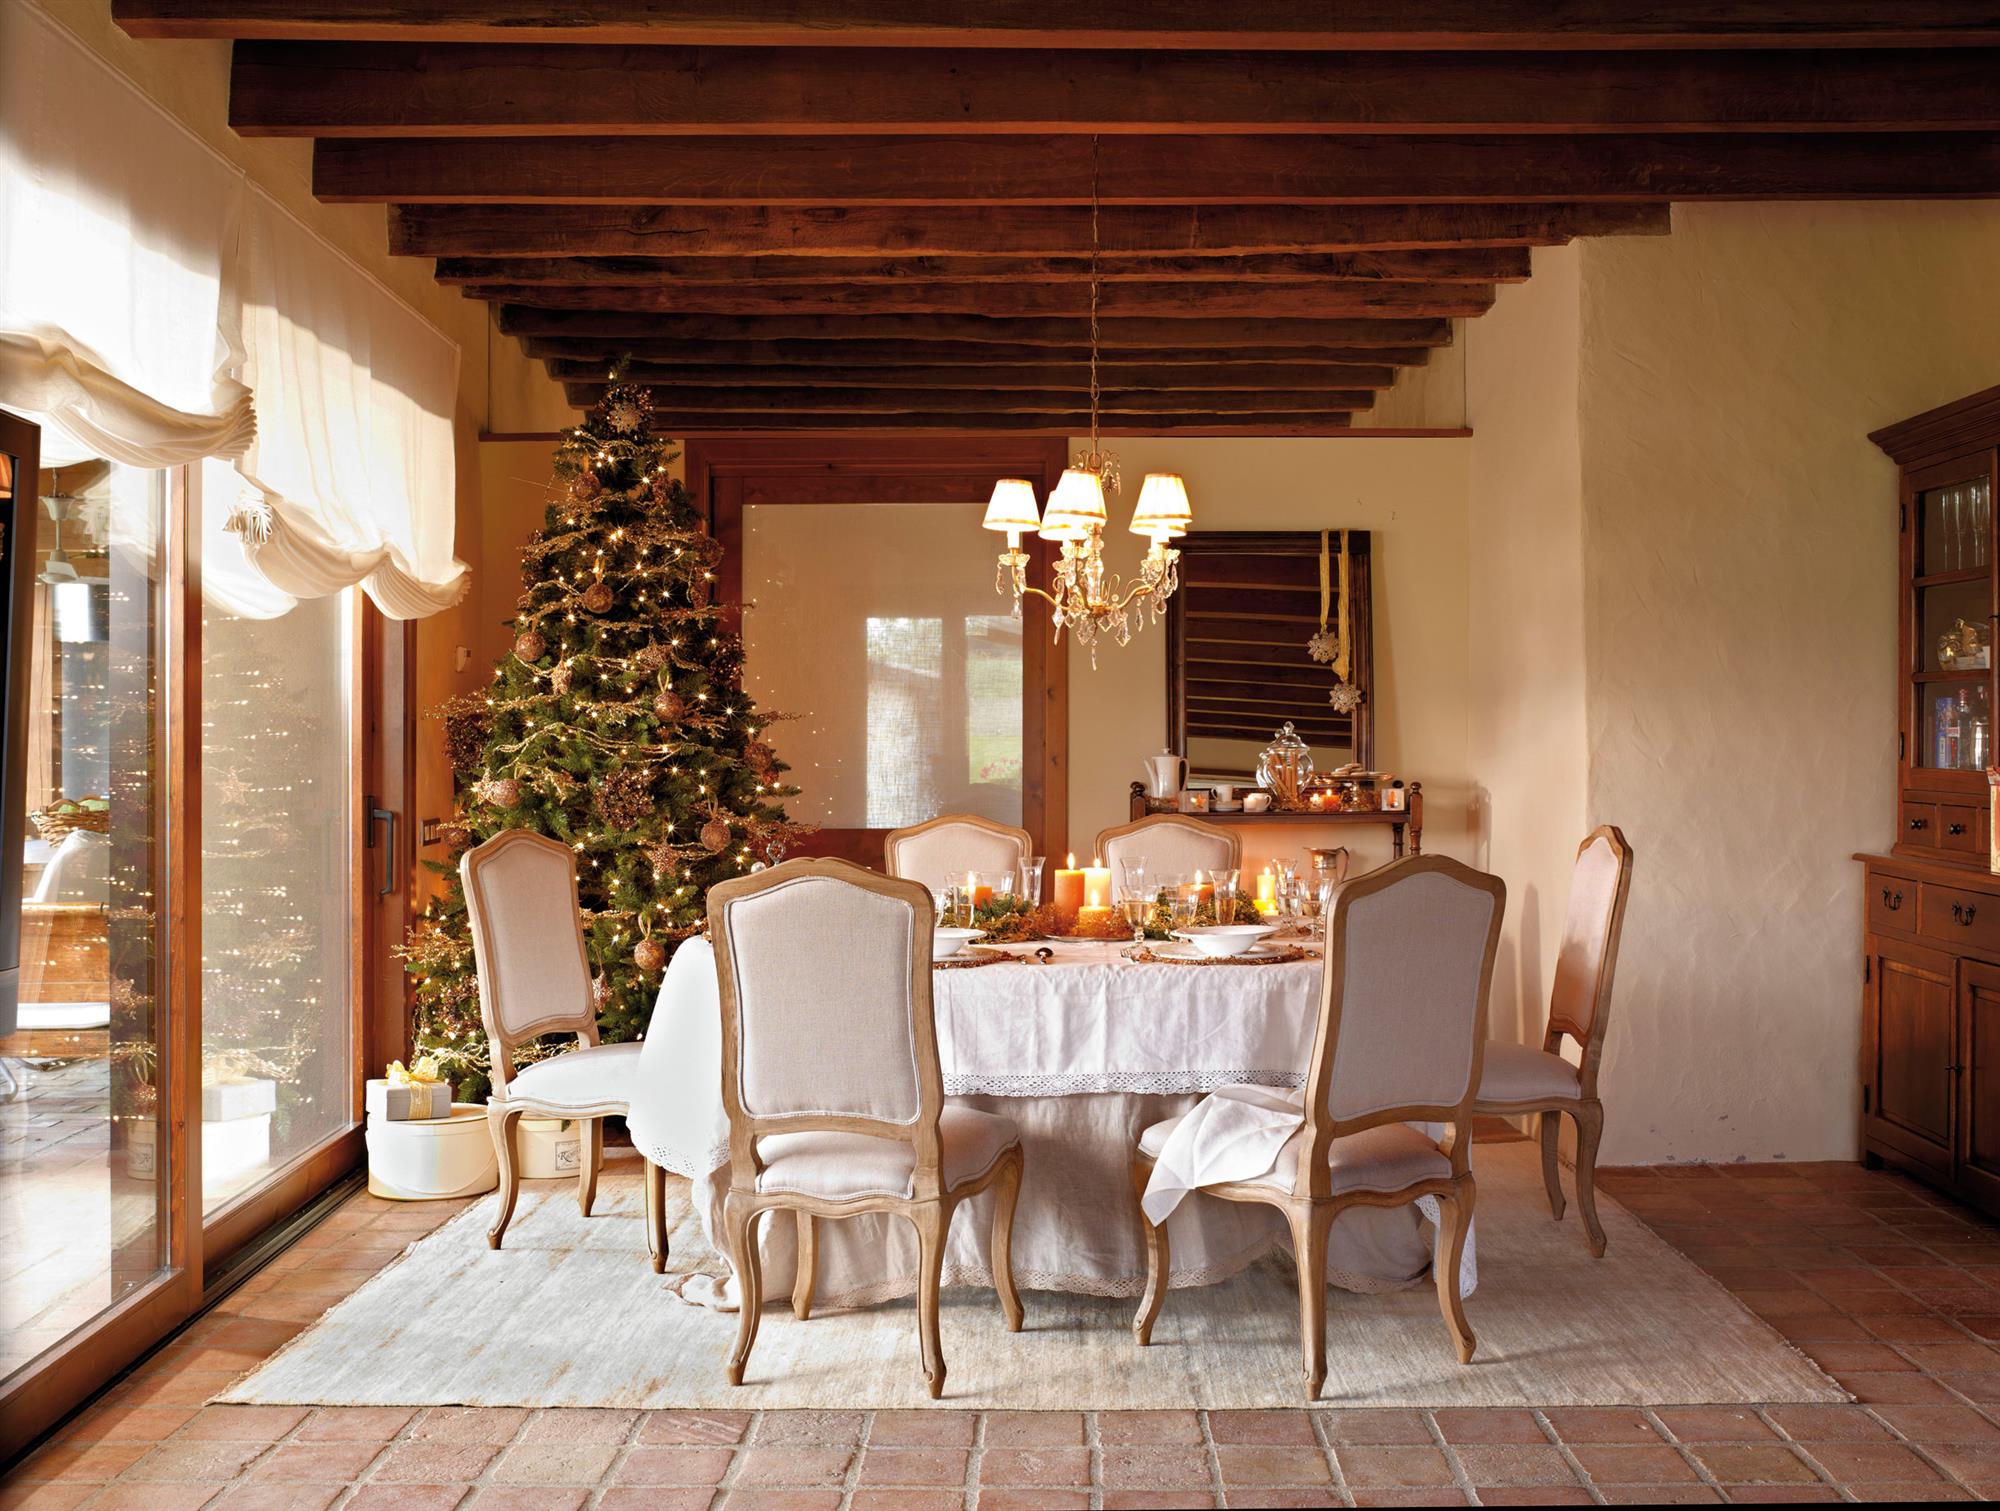 Comedor clásico con mesa navideña, vigas de madera en el techo y árbol de Navidad alto decorado con adornos dorados. 